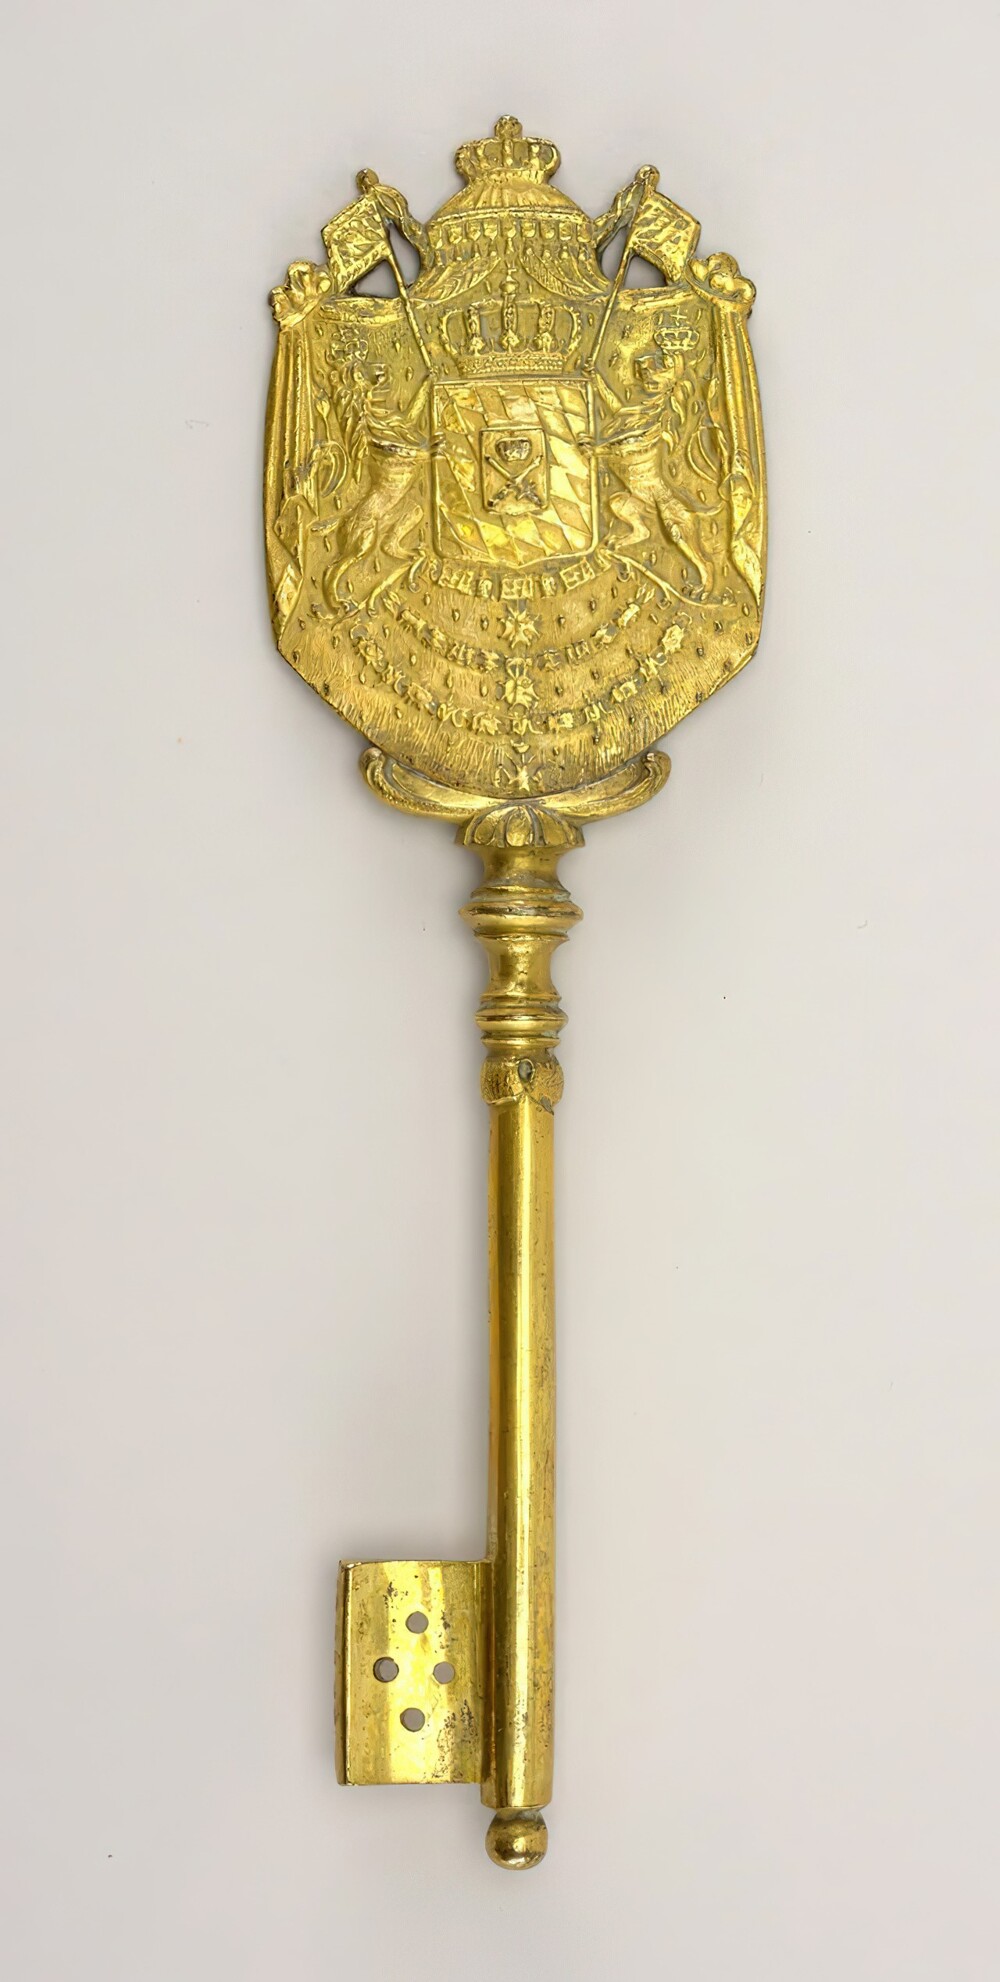 11. Ключ из позолоченной бронзы с гербом Баварии с обеих сторон, ок. 1810 г.